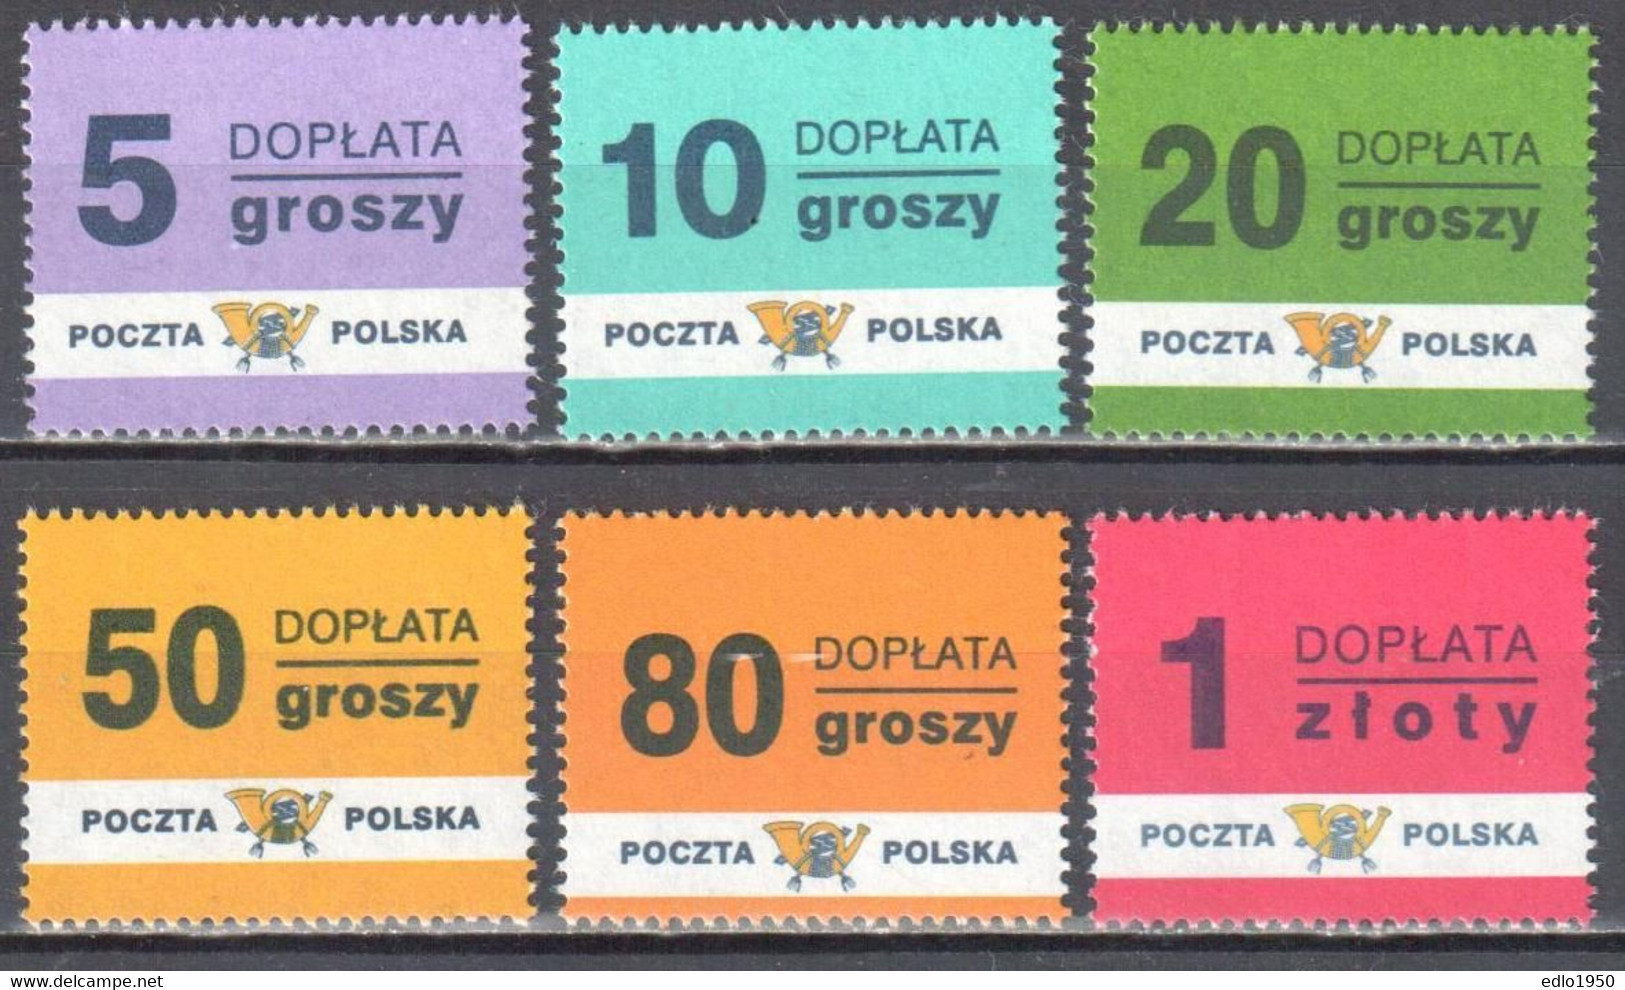 Poland 1998 - Postage Due - Mi.169-74 - MNH - Postage Due